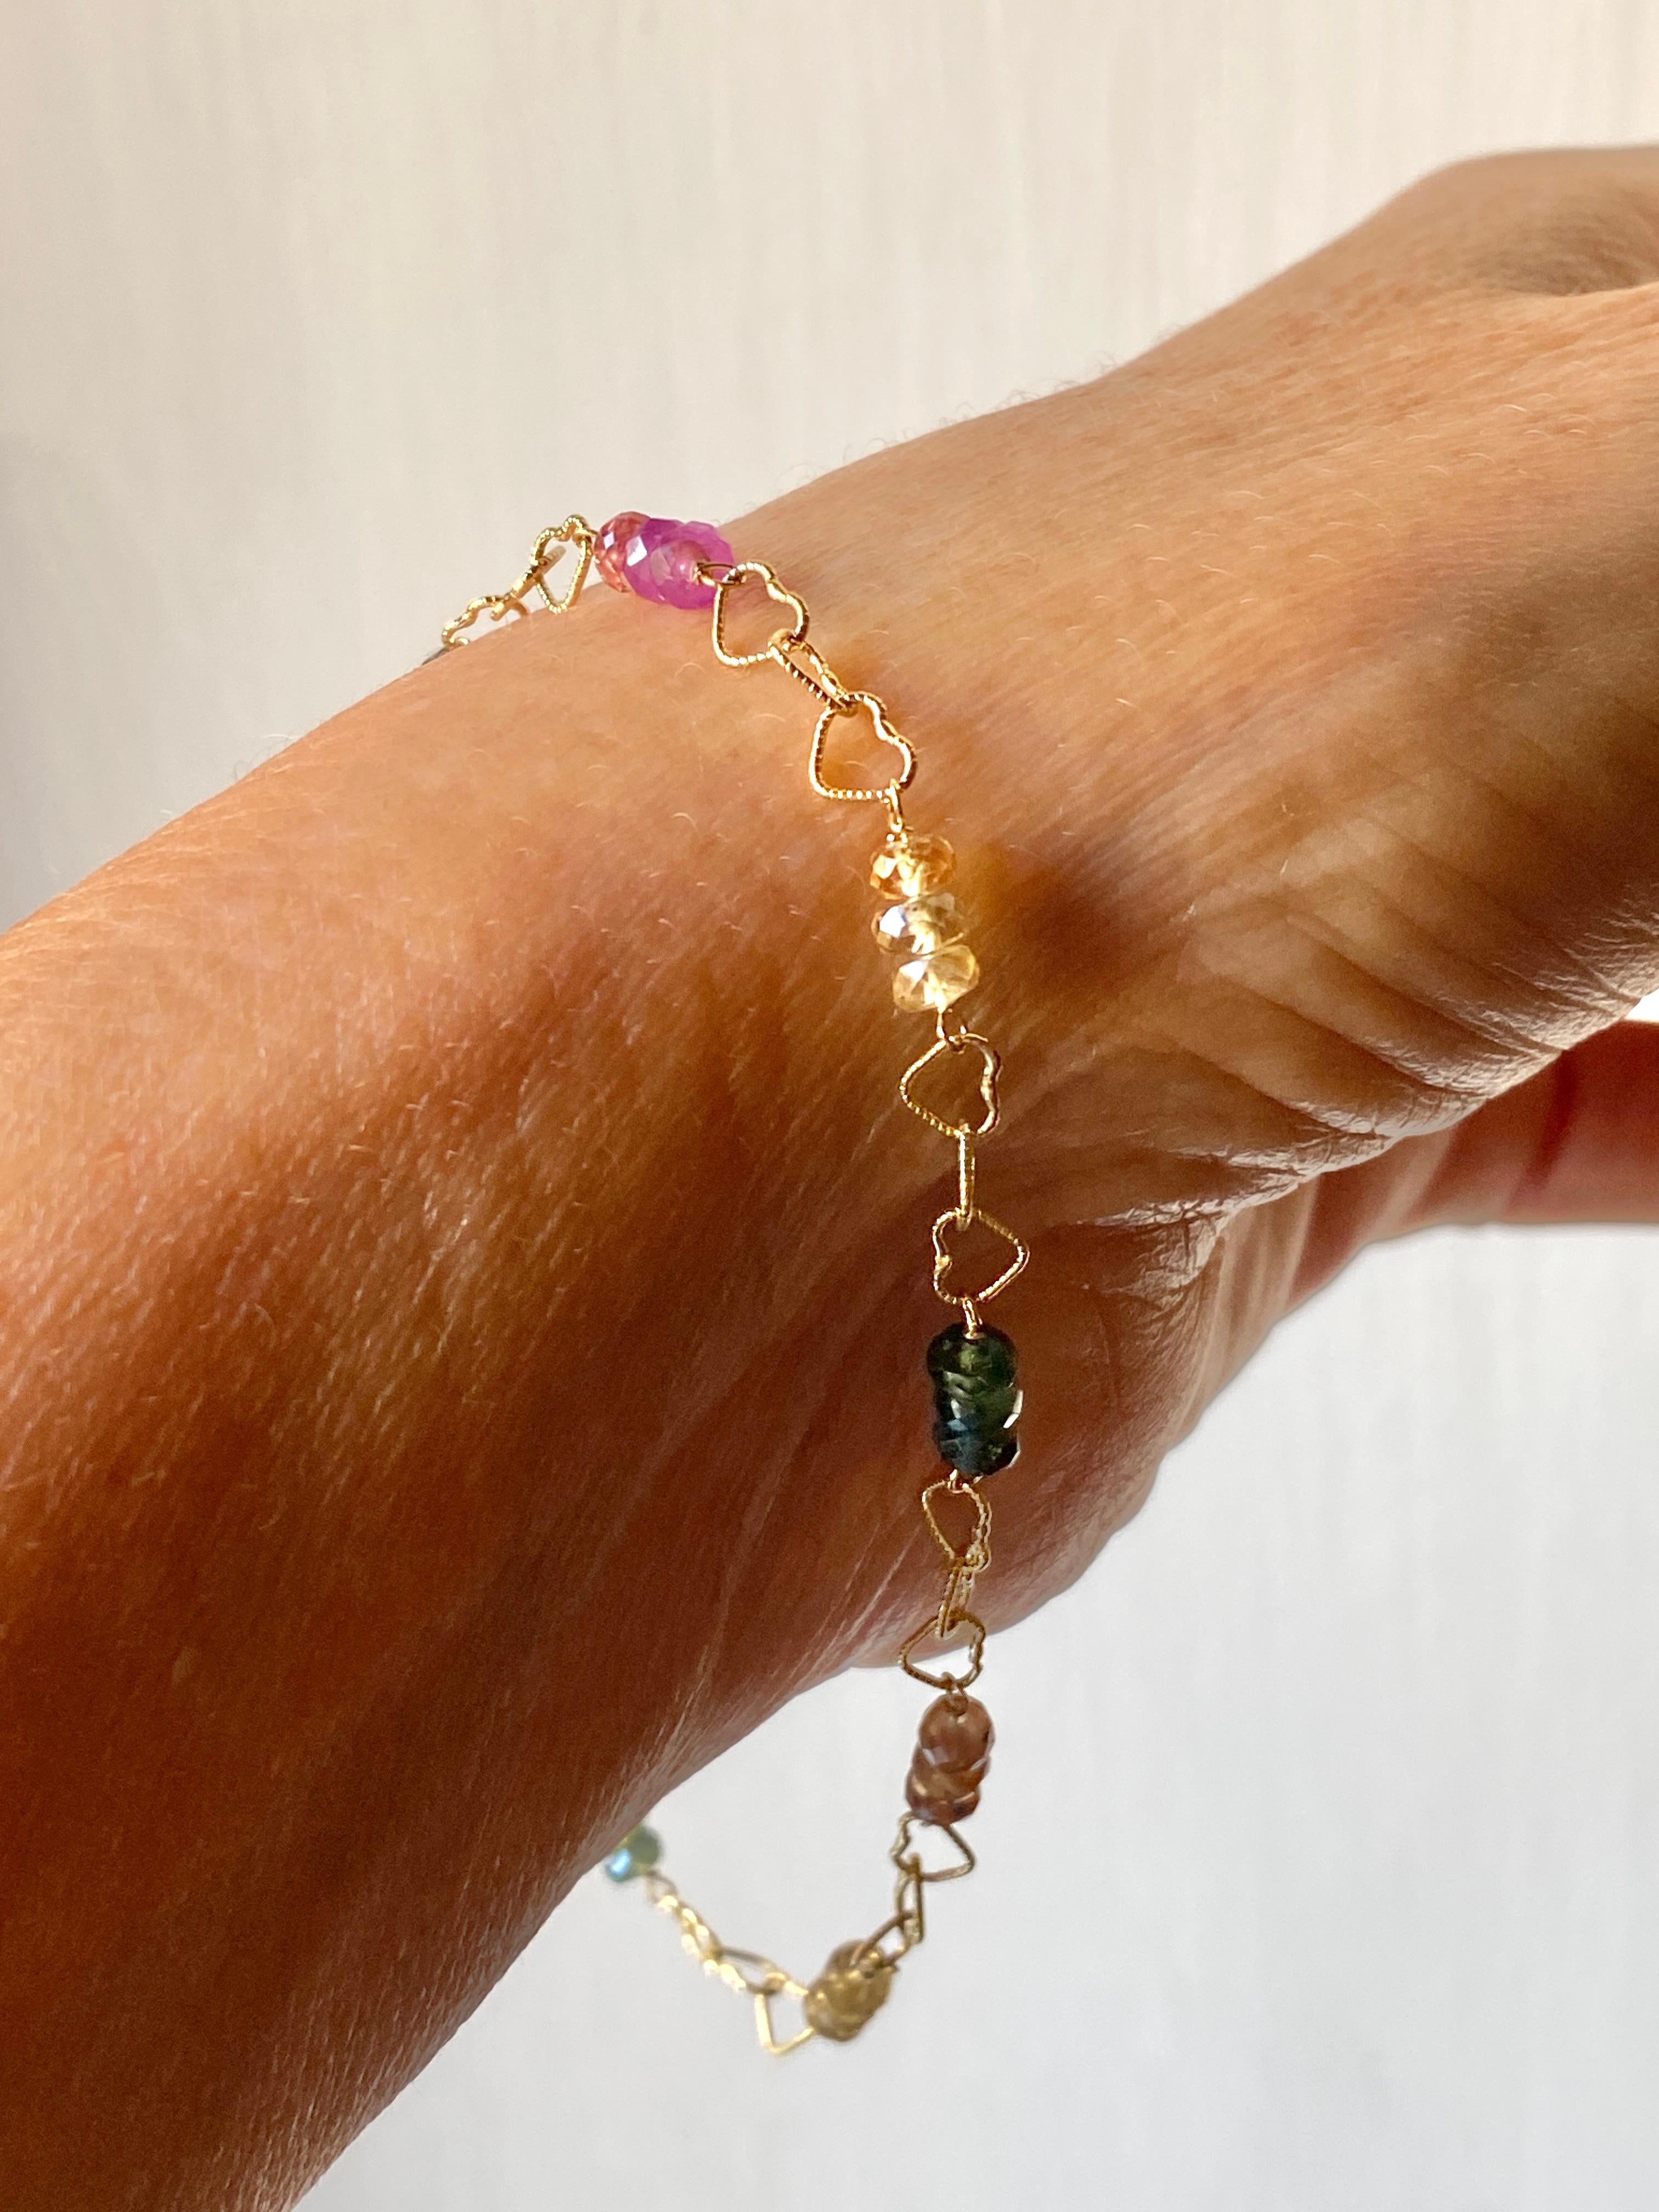 Rossella Ugolini Design Collection Exquisite 18K Gelbgold Multicolor Sapphires Perlen und leicht gehämmert Herzen Kette, handgefertigt in Italien. Dieses bezaubernde Armband besteht aus einer Reihe von farbigen Saphiren, die zusammen mit der zart